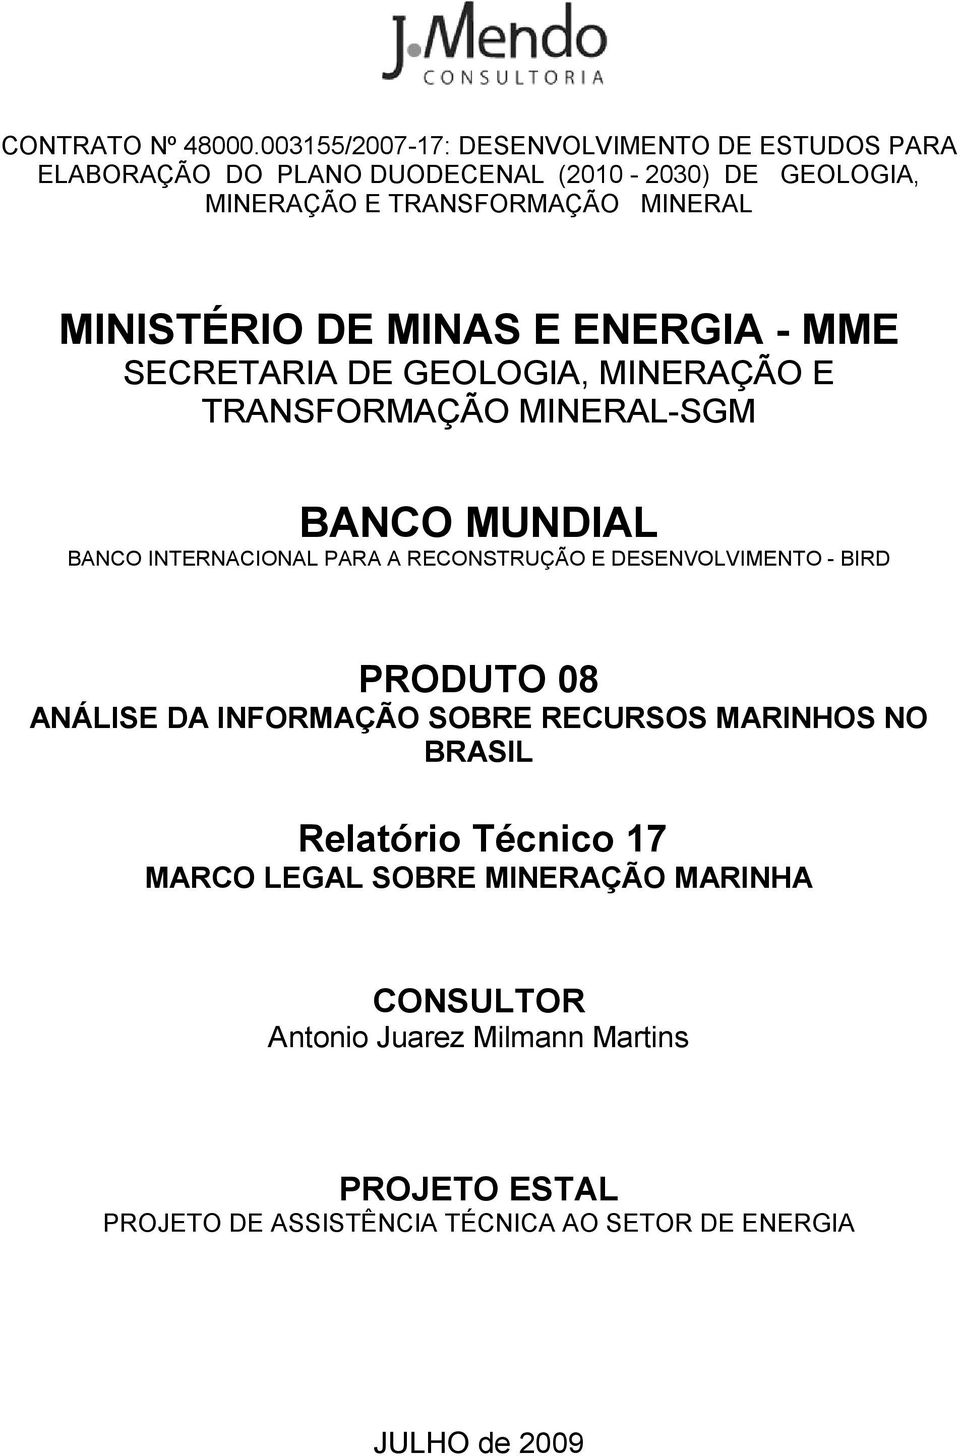 MINISTÉRIO DE MINAS E ENERGIA - MME SECRETARIA DE GEOLOGIA, MINERAÇÃO E TRANSFORMAÇÃO MINERAL-SGM BANCO MUNDIAL BANCO INTERNACIONAL PARA A